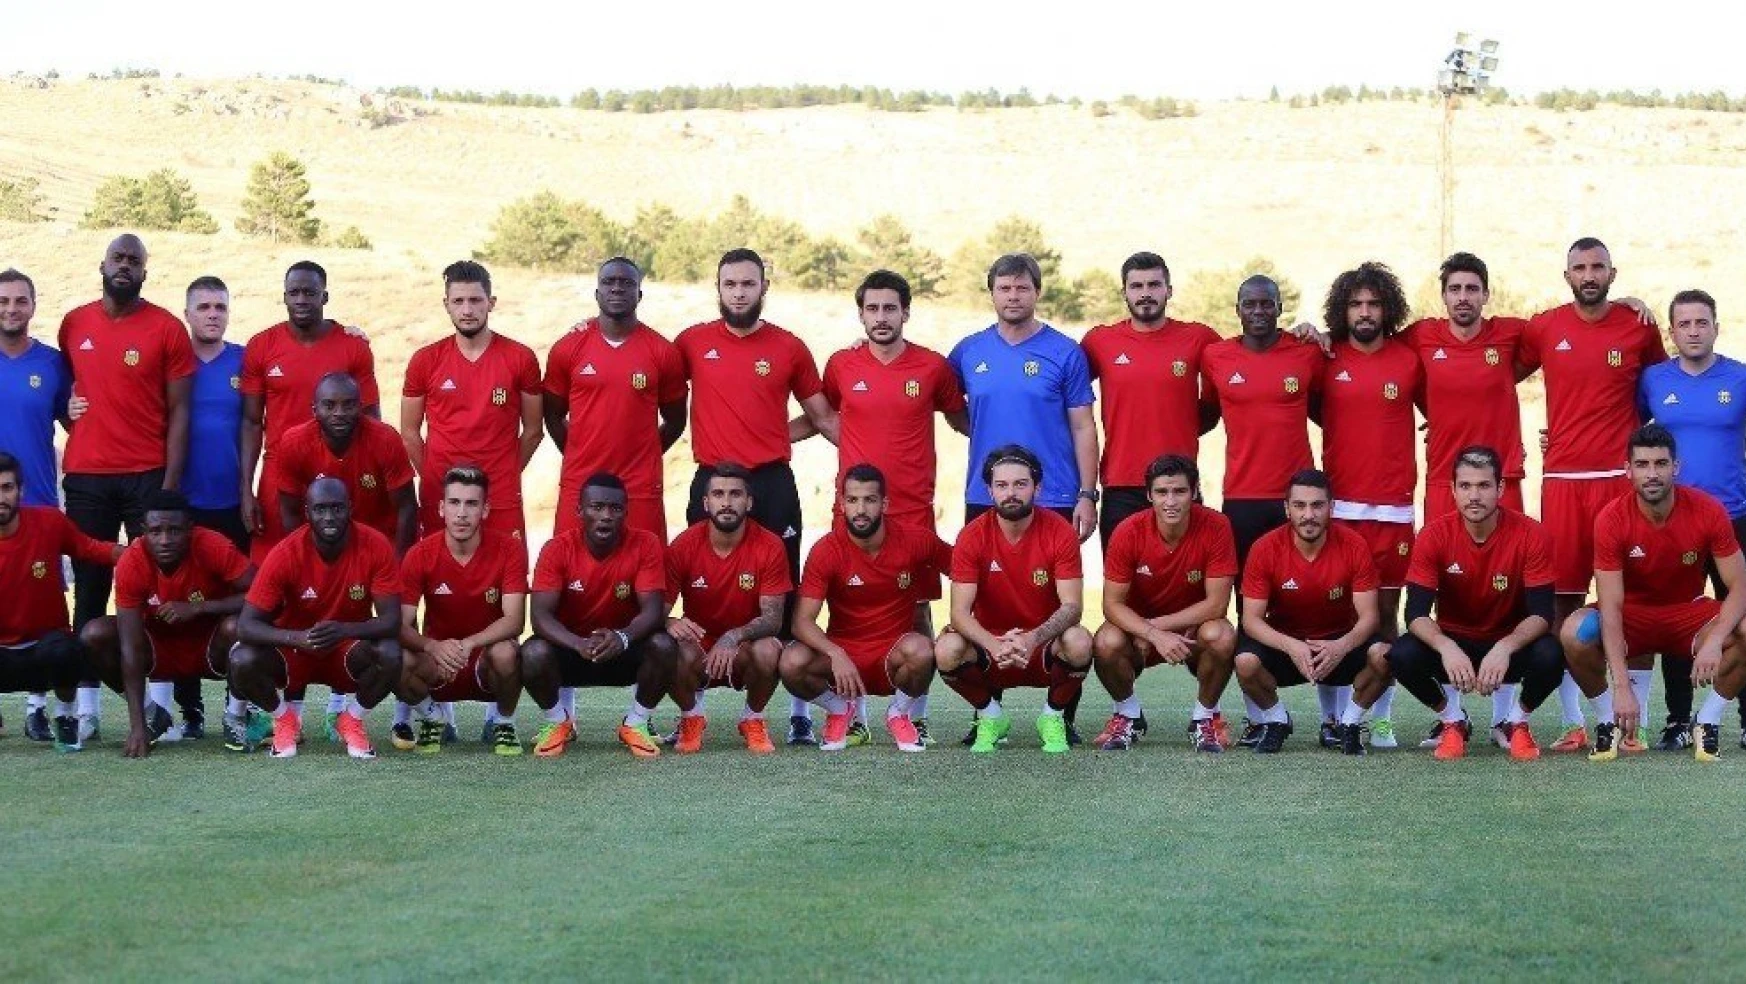 Evkur Yeni Malatyaspor'da Osmanlıspor maçı hazırlıkları sürüyor